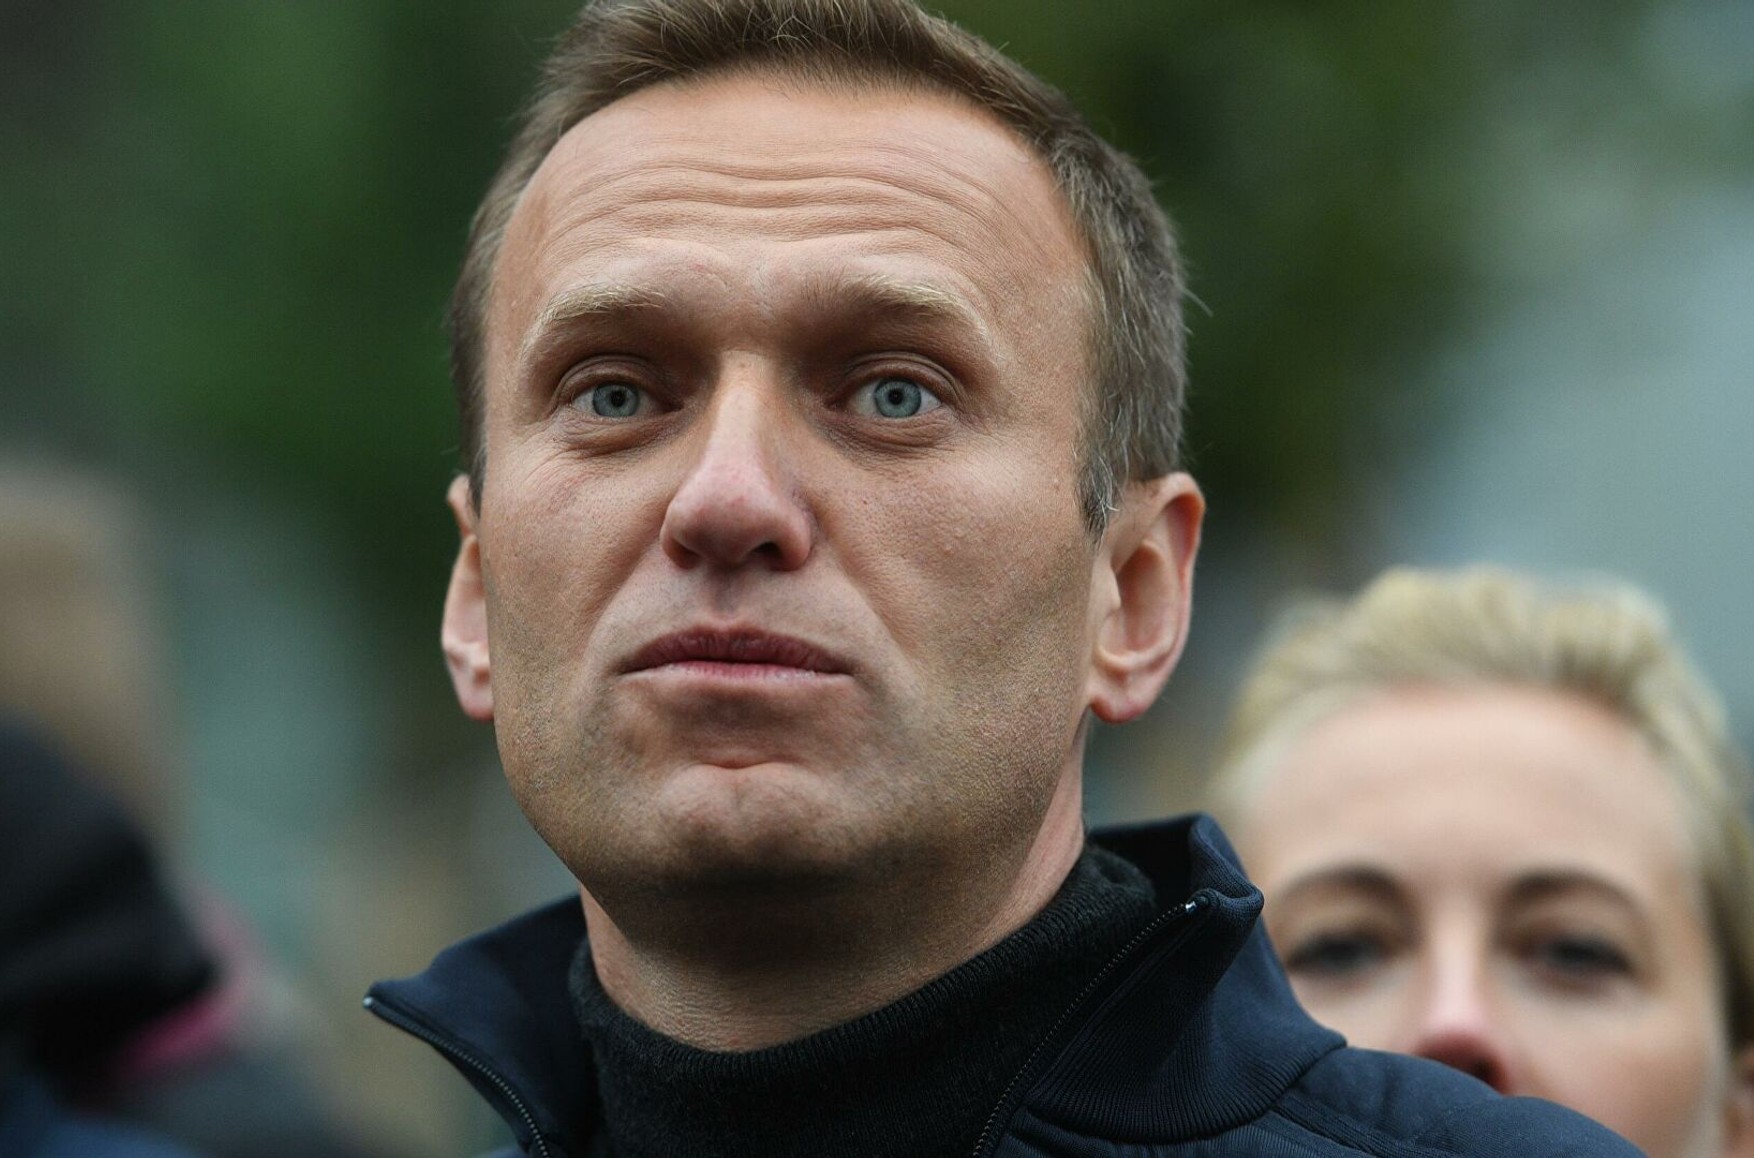 Суд відхилив скаргу Навального, ні разу не згадавши його прізвище в постанові